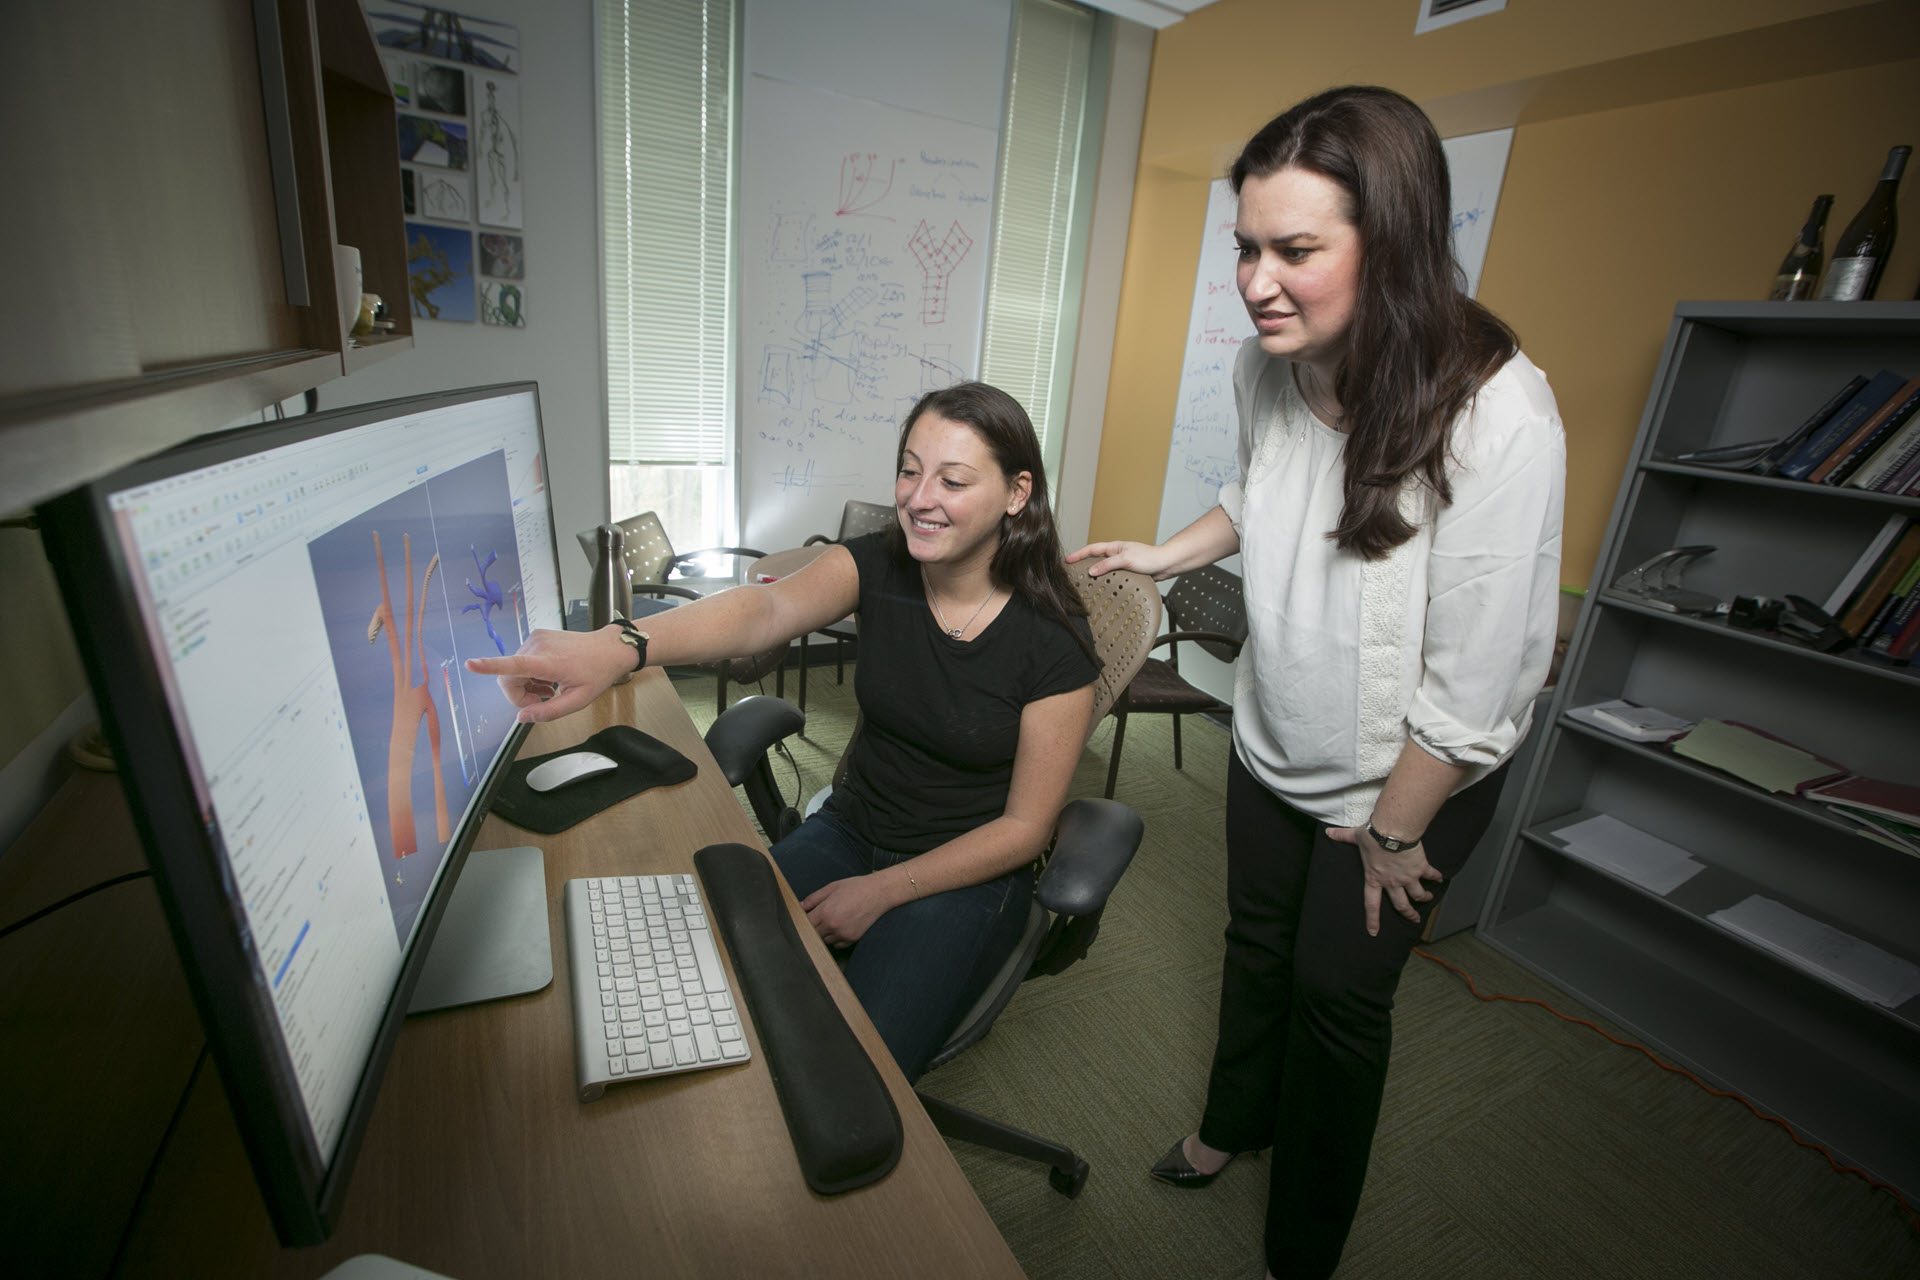 Amanda Randles and a co-worker collaborating at a computer.